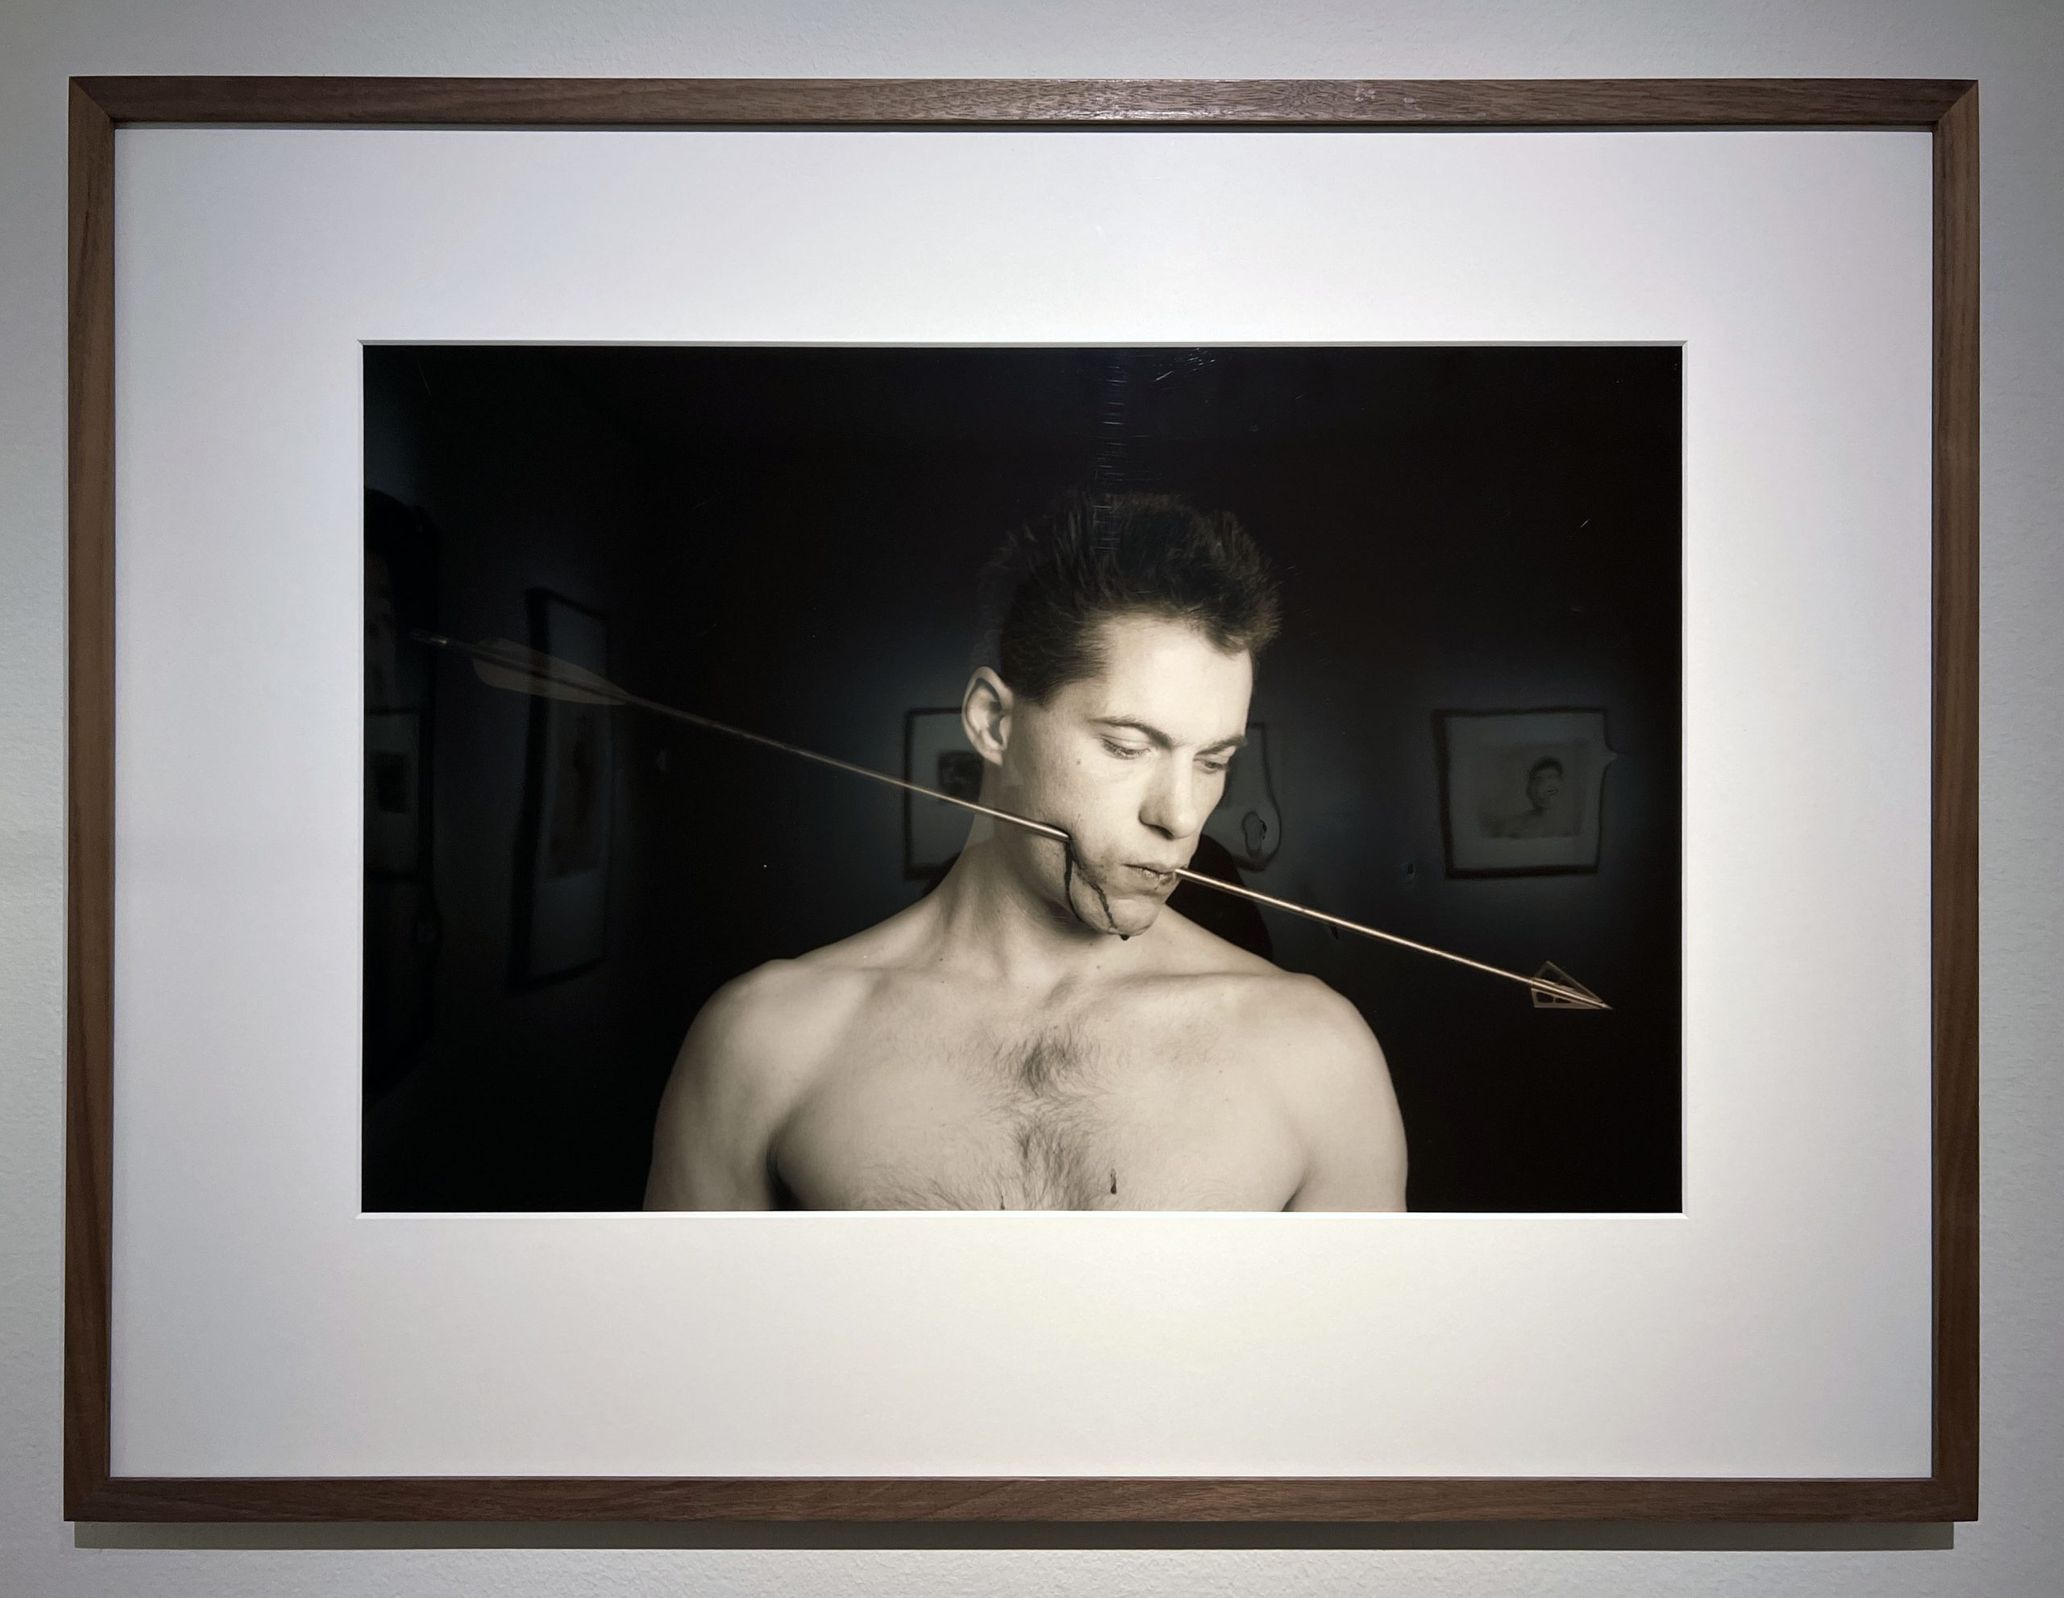 Paul Blanca「Self-portrait with arrow, 1987」自らの頬に矢を突き刺したセルフポートレート作品。ブランカは80年代に自身を被写体にした写真群で一躍知られるようになった